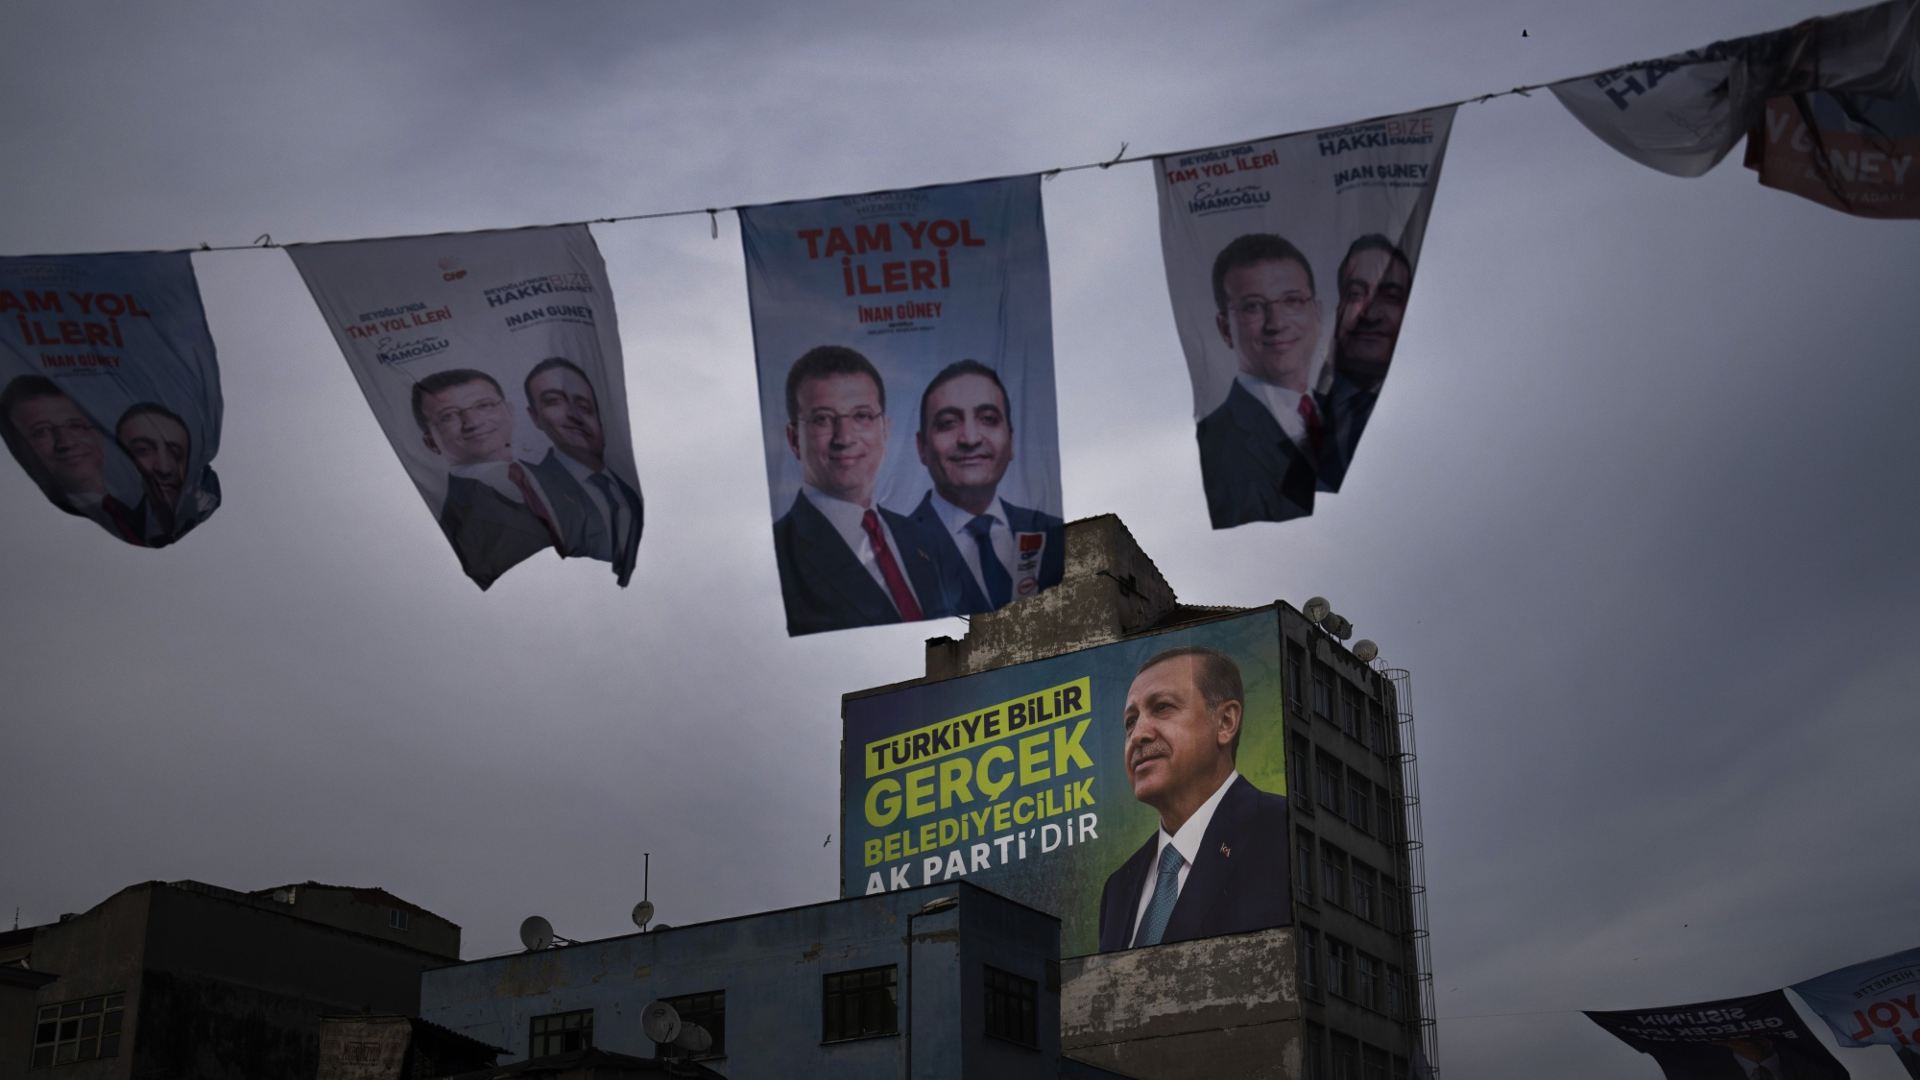 Ստամբուլի ընտրությունները կարող են վճռել Թուրքիայի ապագան․ Քոփթաշ